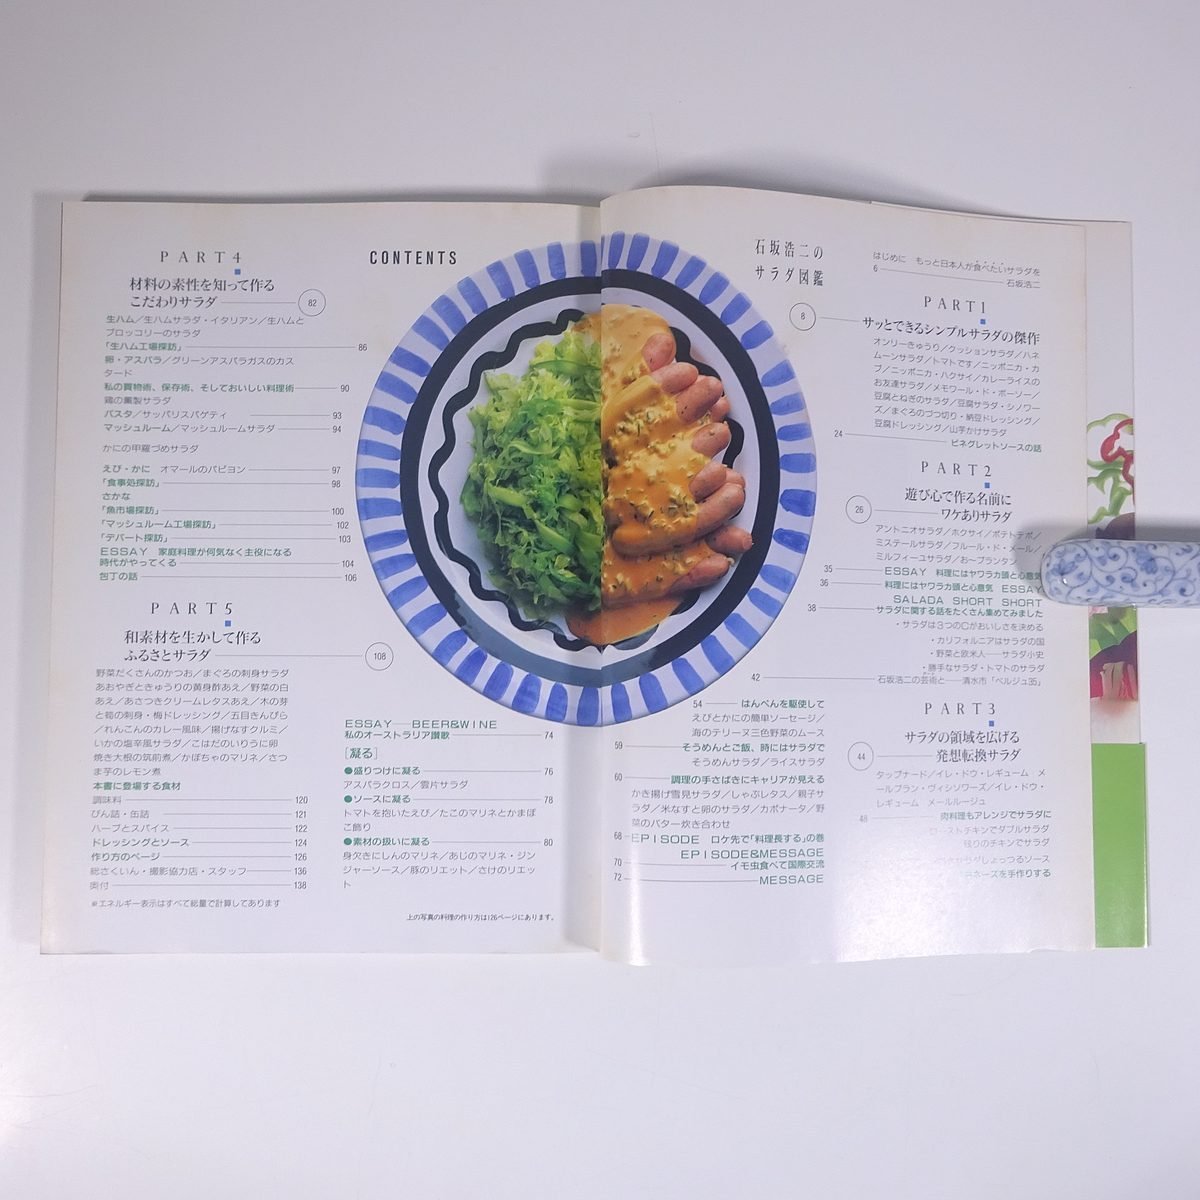 石坂浩二のサラダ図鑑 講談社 1991 大型本 料理 献立 レシピ 家庭料理_画像6